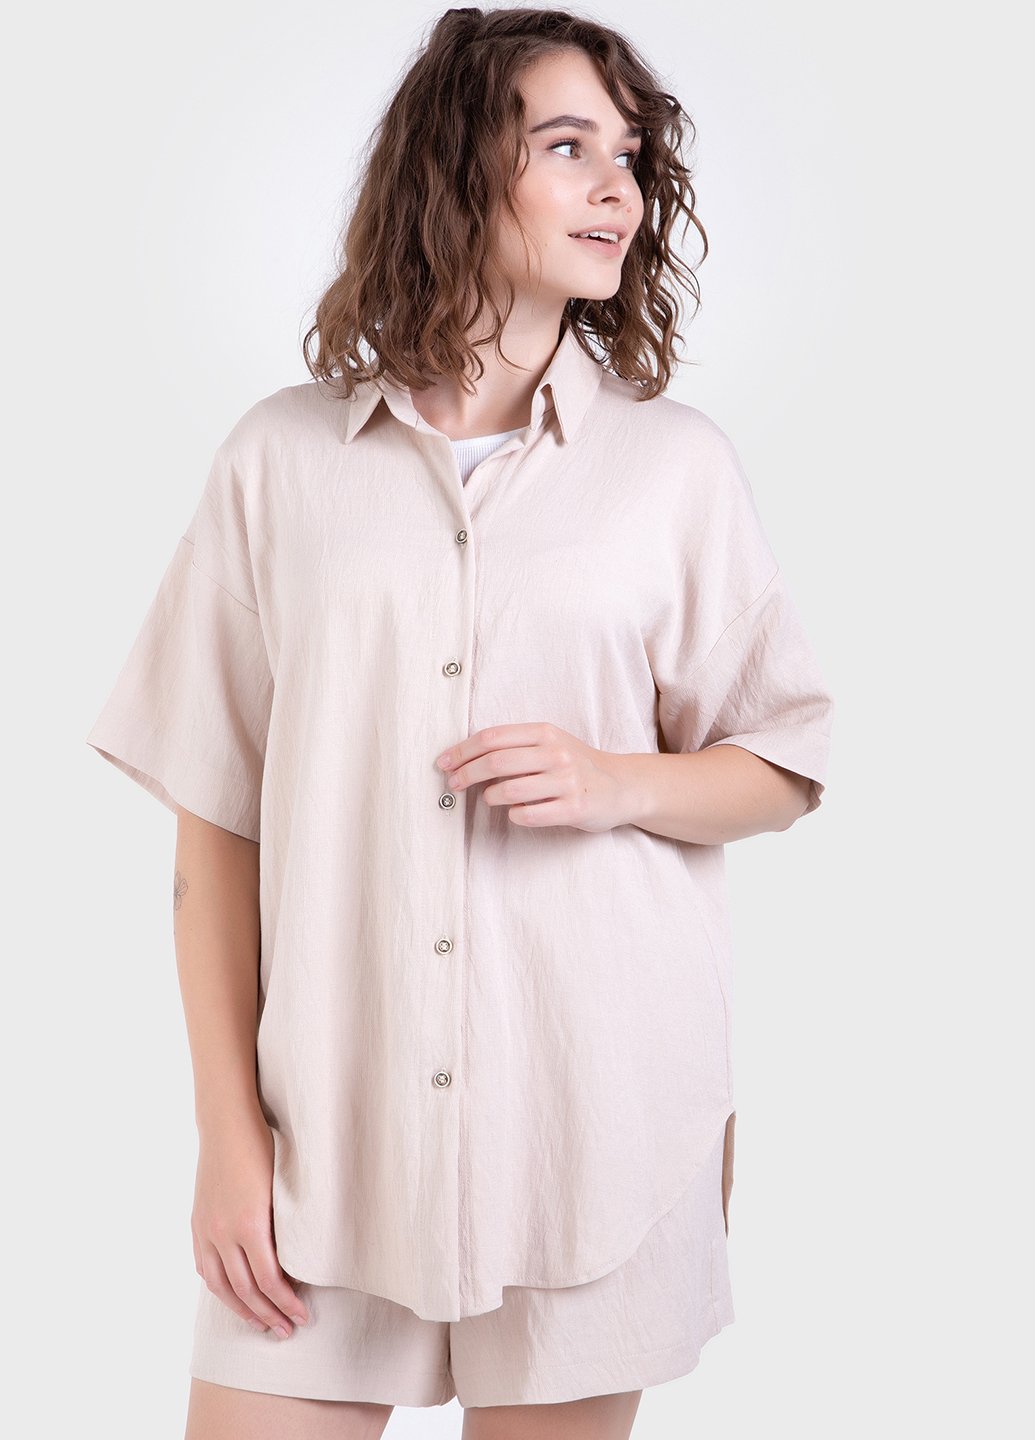 Купить Оверсайз рубашка женская бежевого цвета из льна-жатки Merlini Авеллино 200000066, размер 42-44 в интернет-магазине